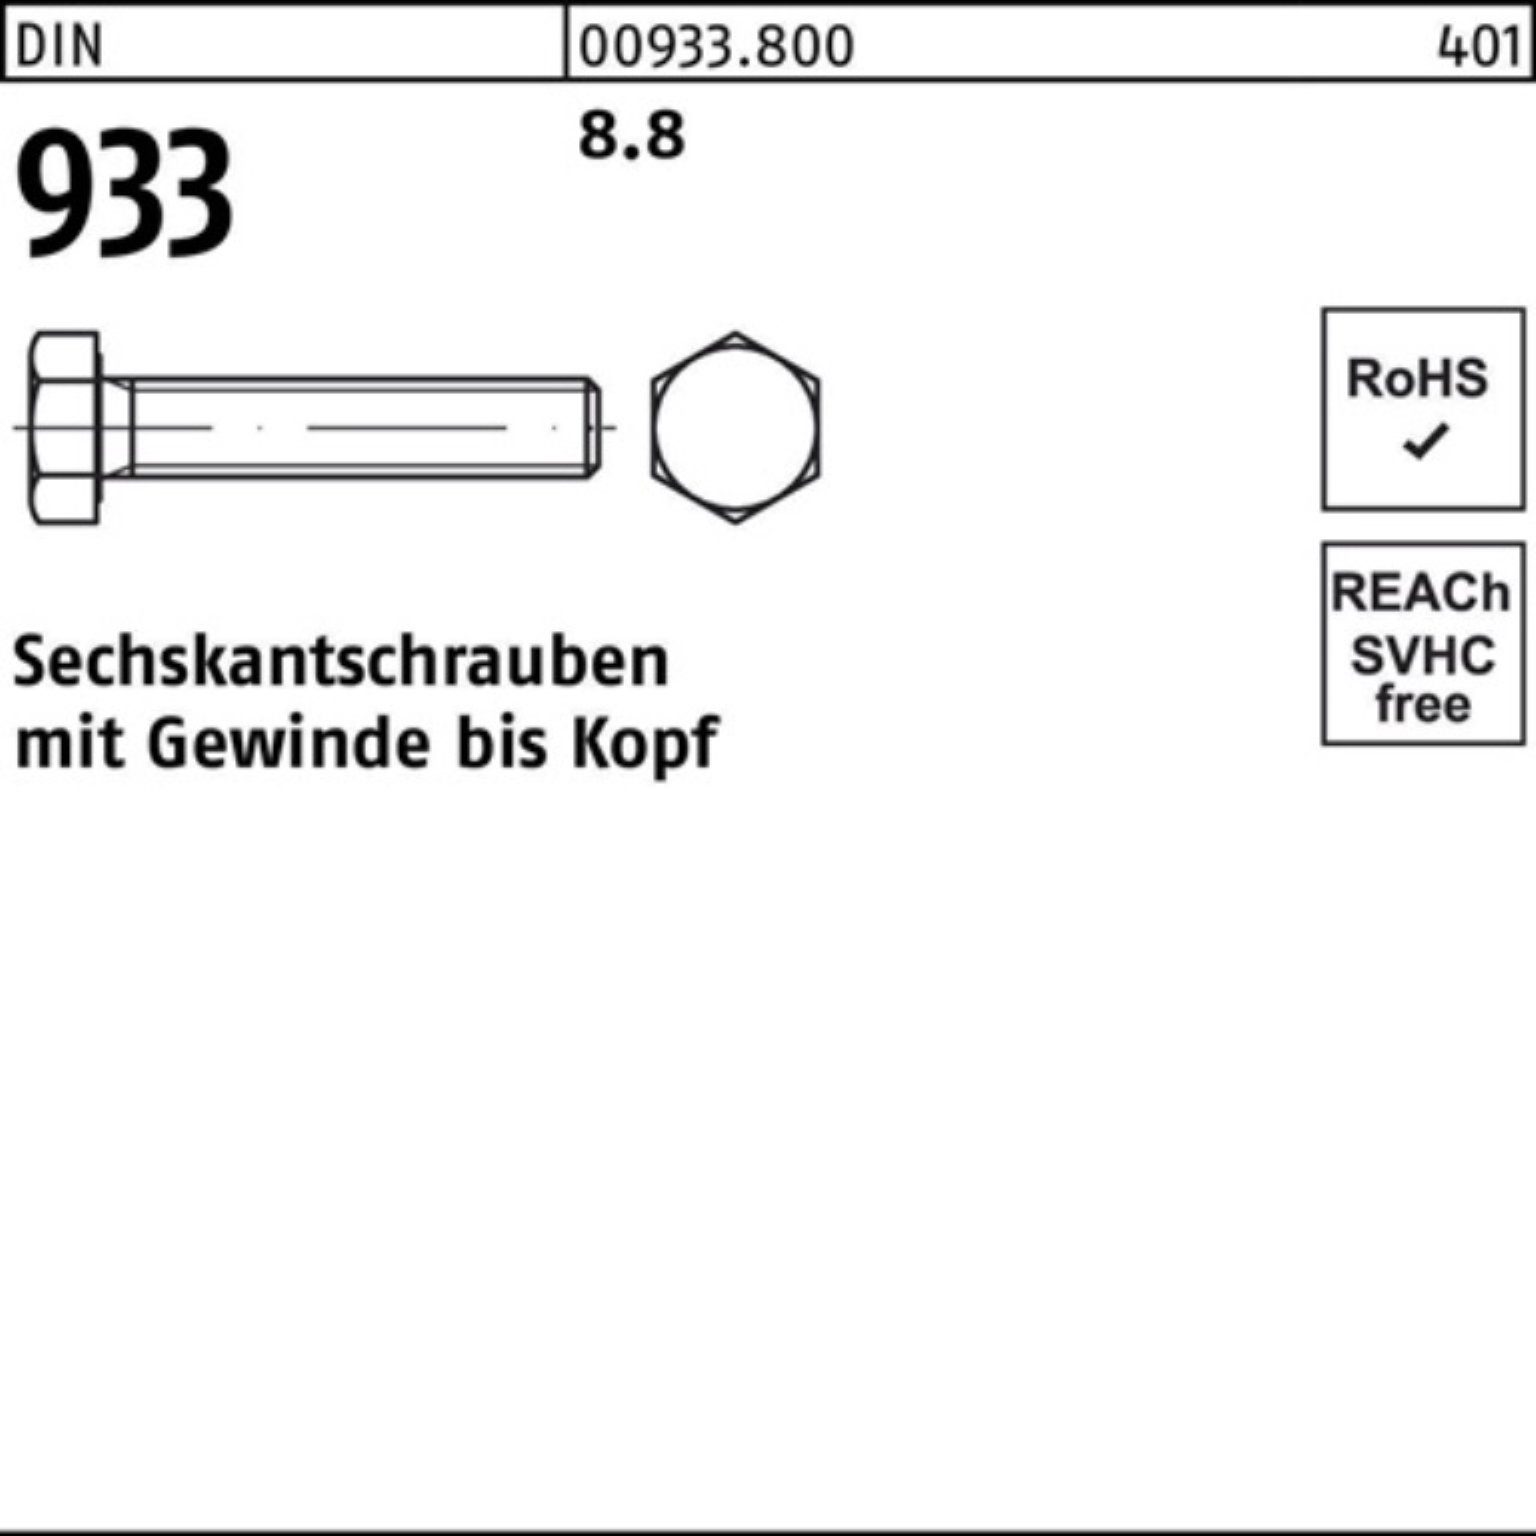 Sechskantschraube DIN VG Stück 100 M10x DIN 100er 933 Sechskantschraube Pack Reyher 933 8.8 40